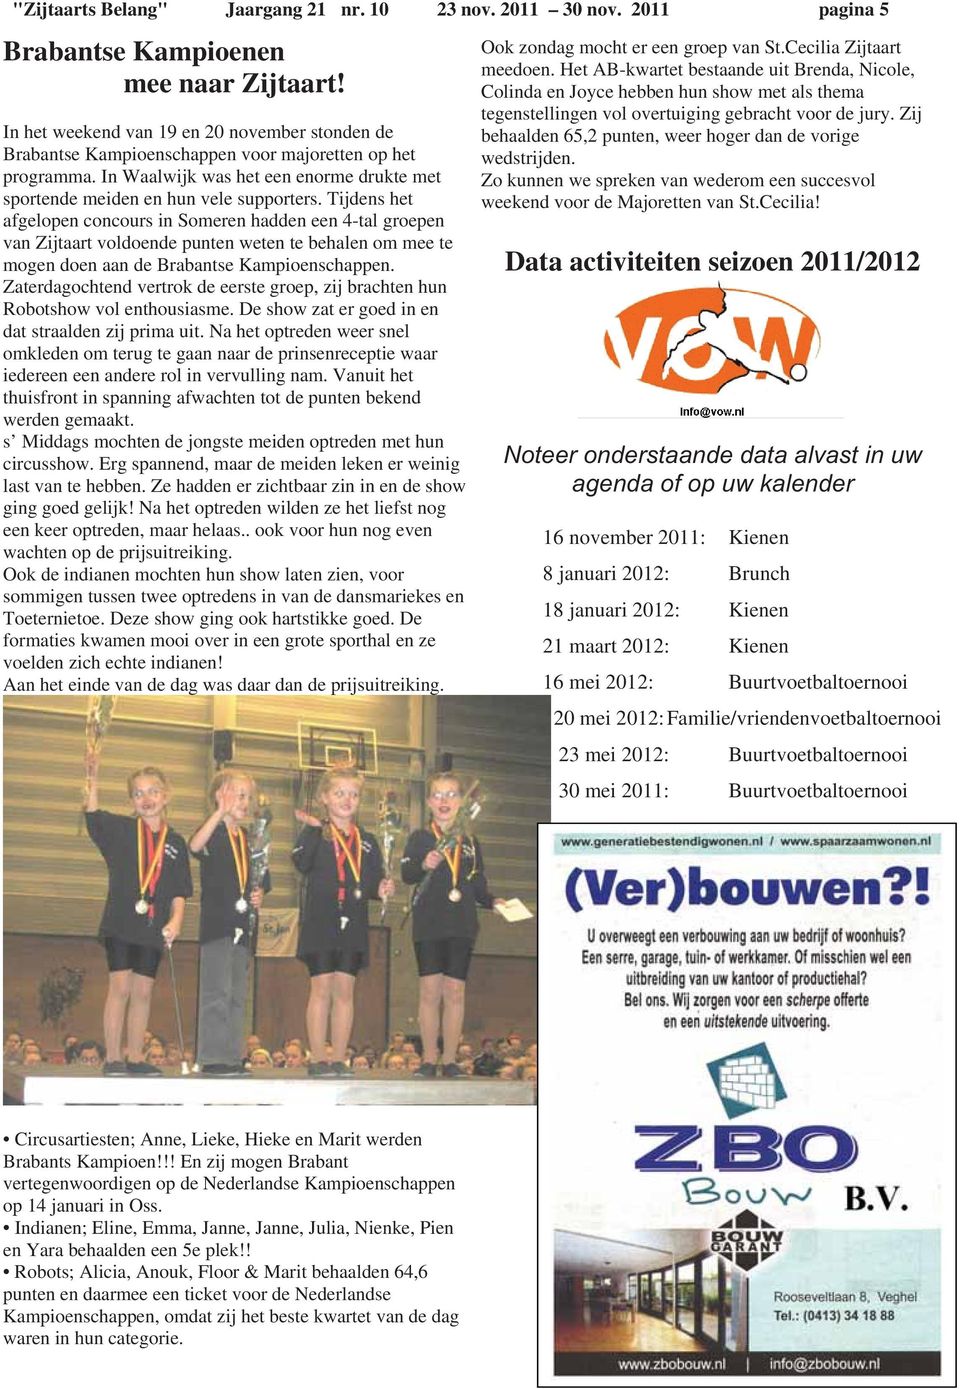 Tijdens het afgelopen concours in Someren hadden een 4-tal groepen van Zijtaart voldoende punten weten te behalen om mee te mogen doen aan de Brabantse Kampioenschappen.